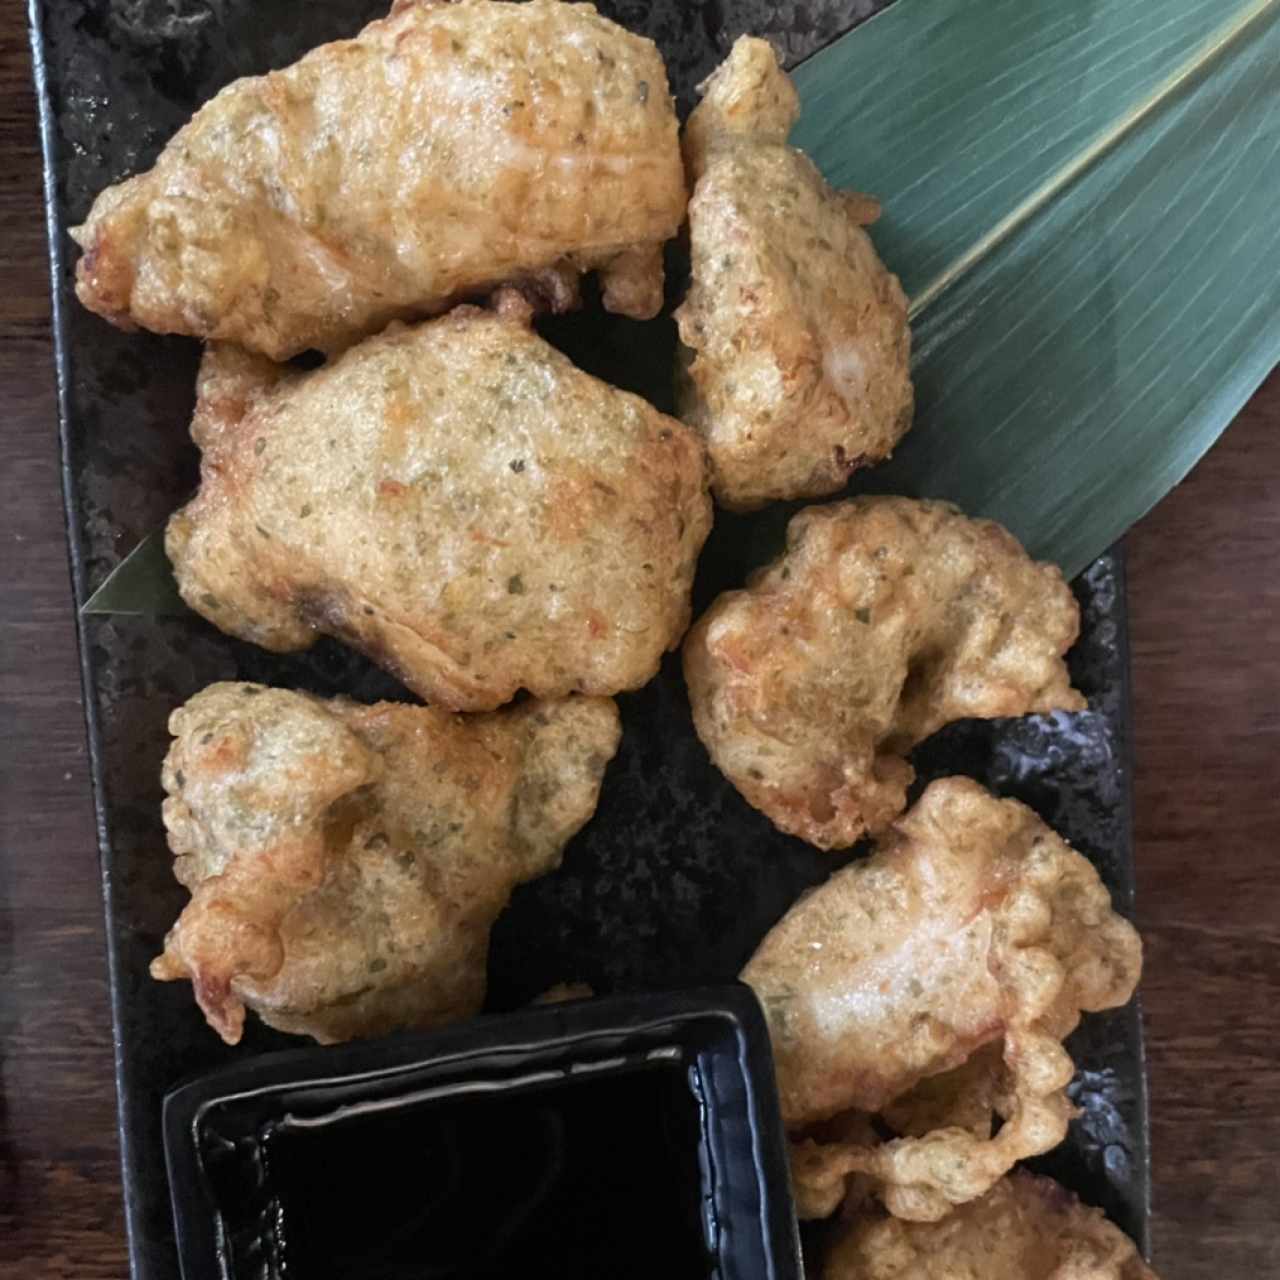 Encuentro frito en tempura